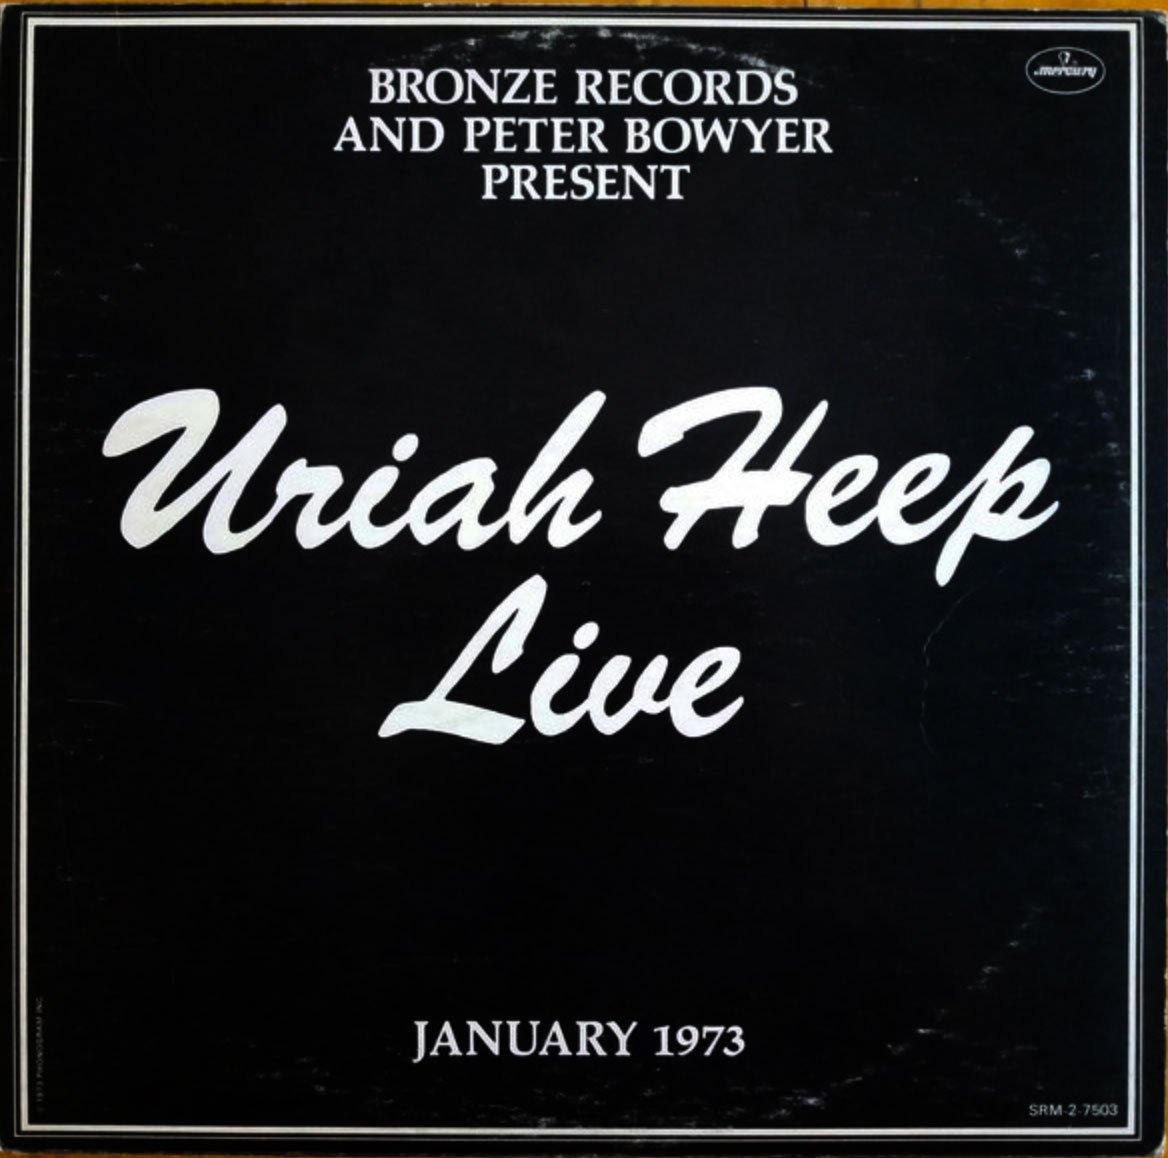 URIAH HEEP ‎– Uriah Heep Live - VinylPursuit.com